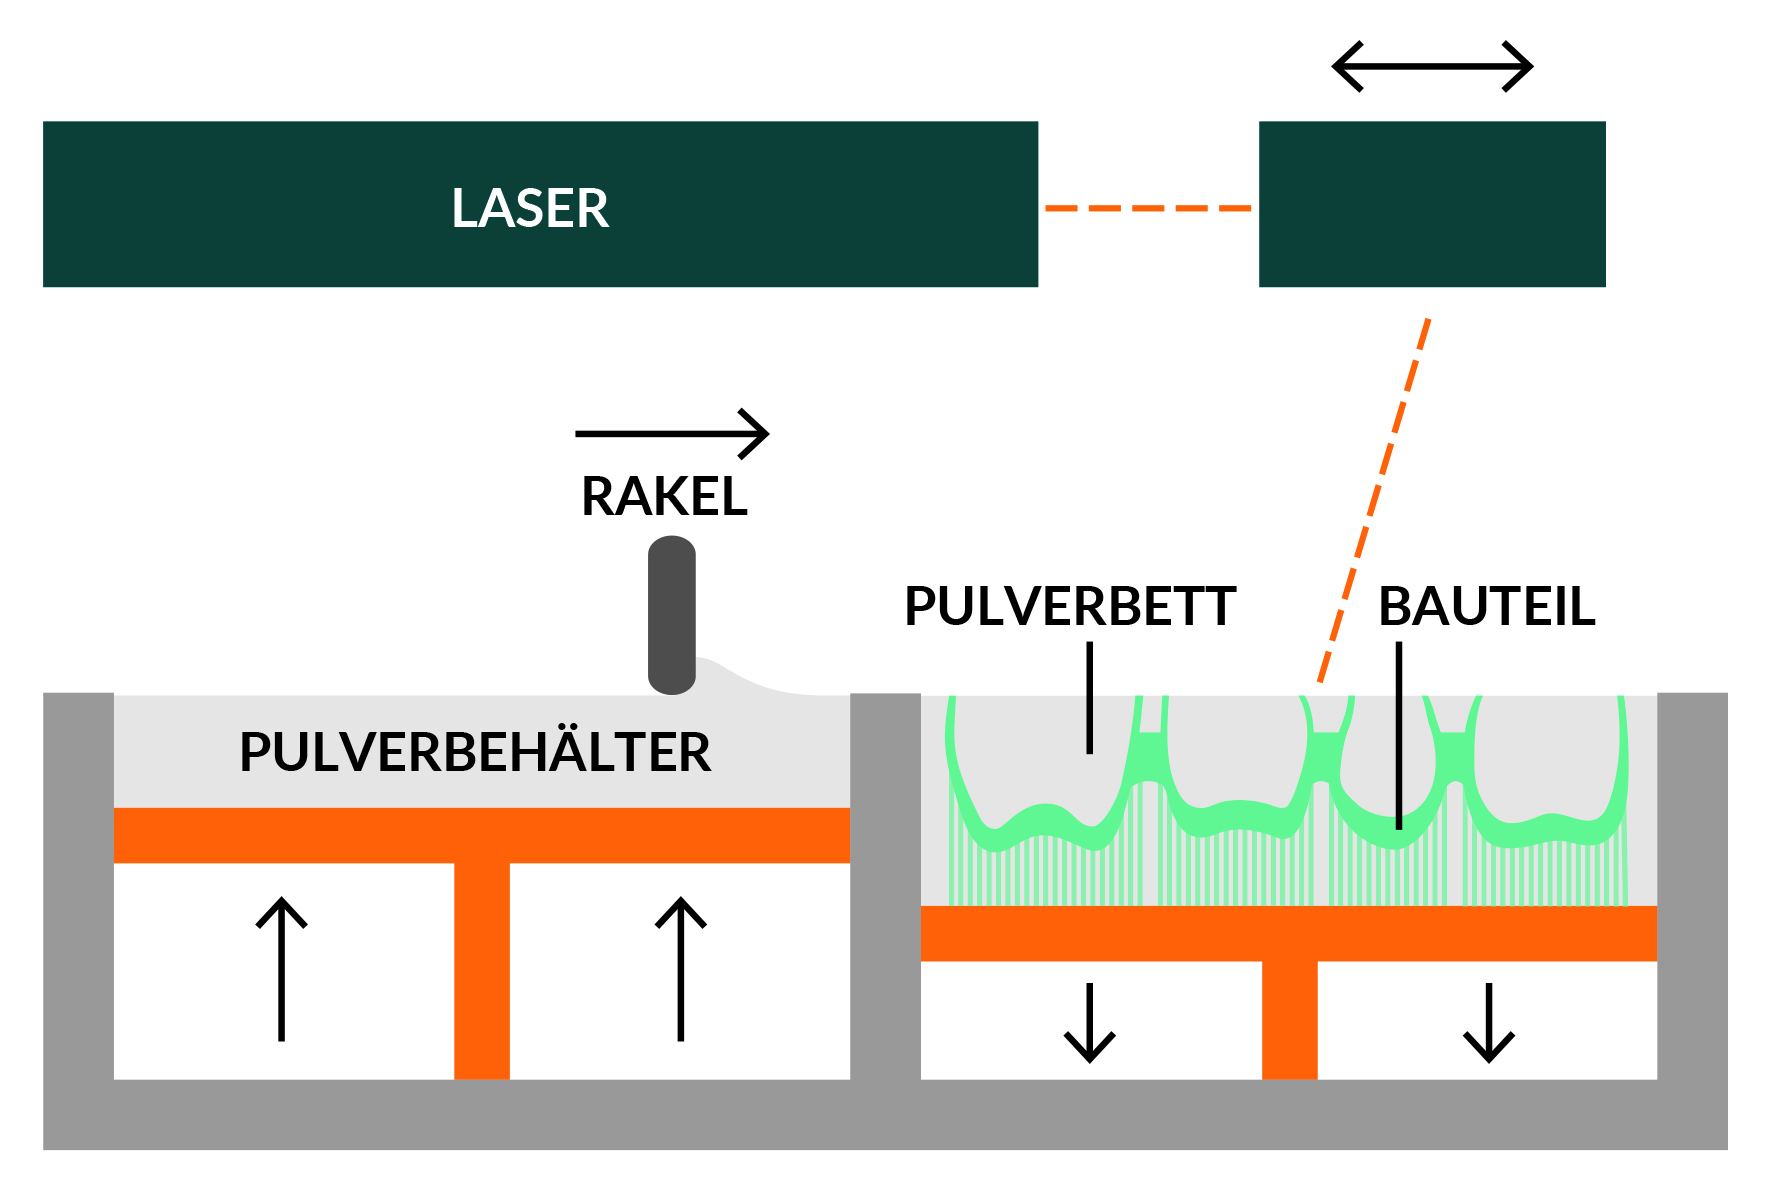 Metal structure LaserMelting framework (left) vs. metal structure Laser Sintering framework (right)